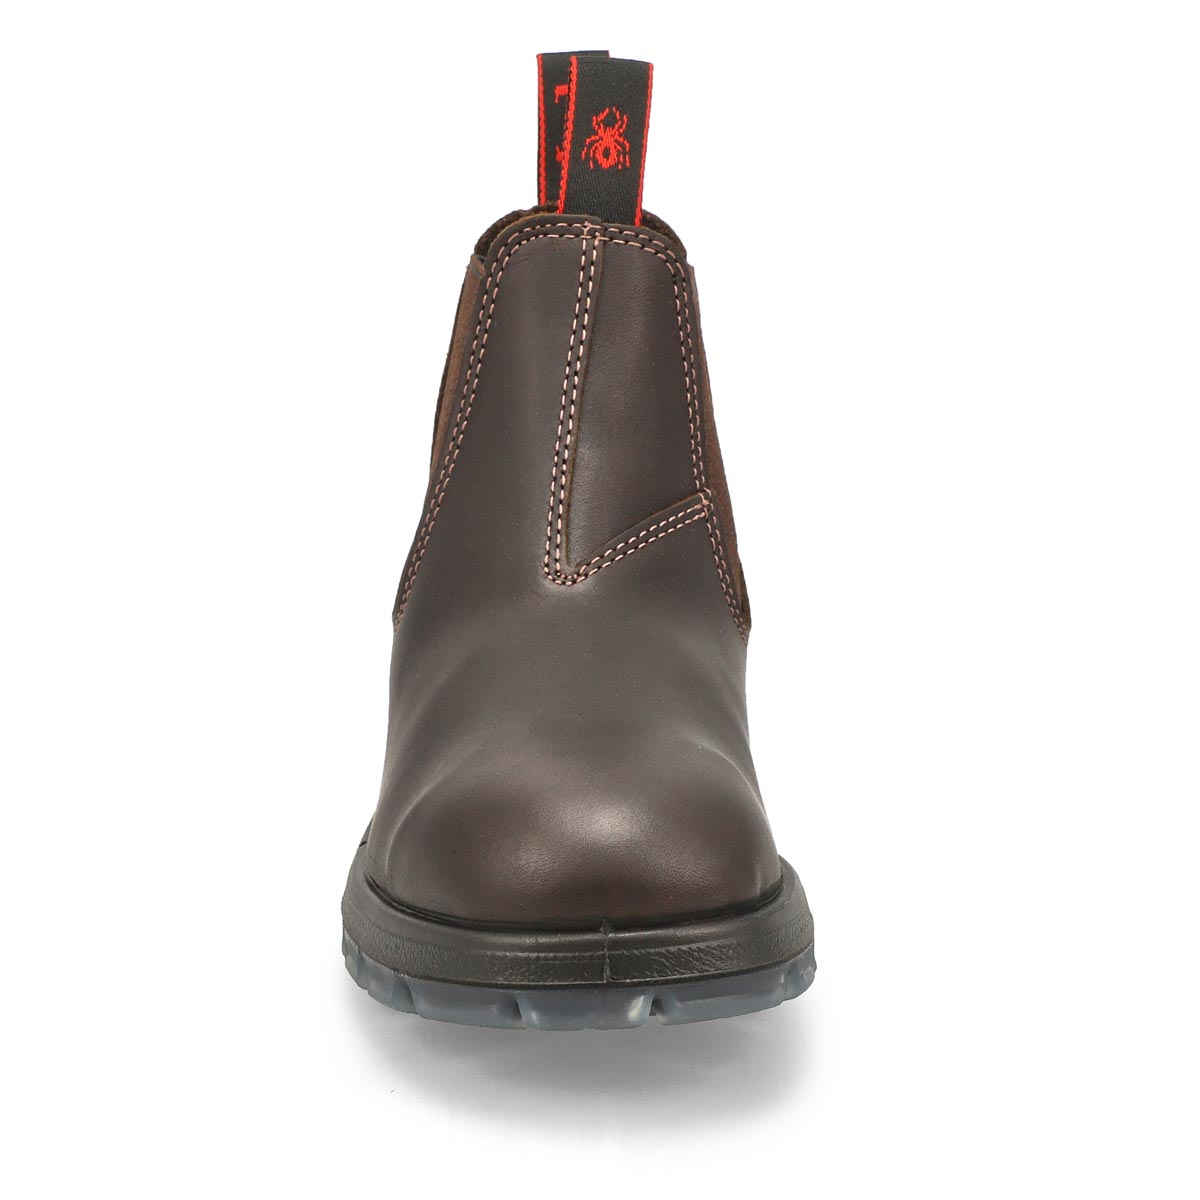 Unisex Nevada Leather Pull On Boot - Puma Aquapel